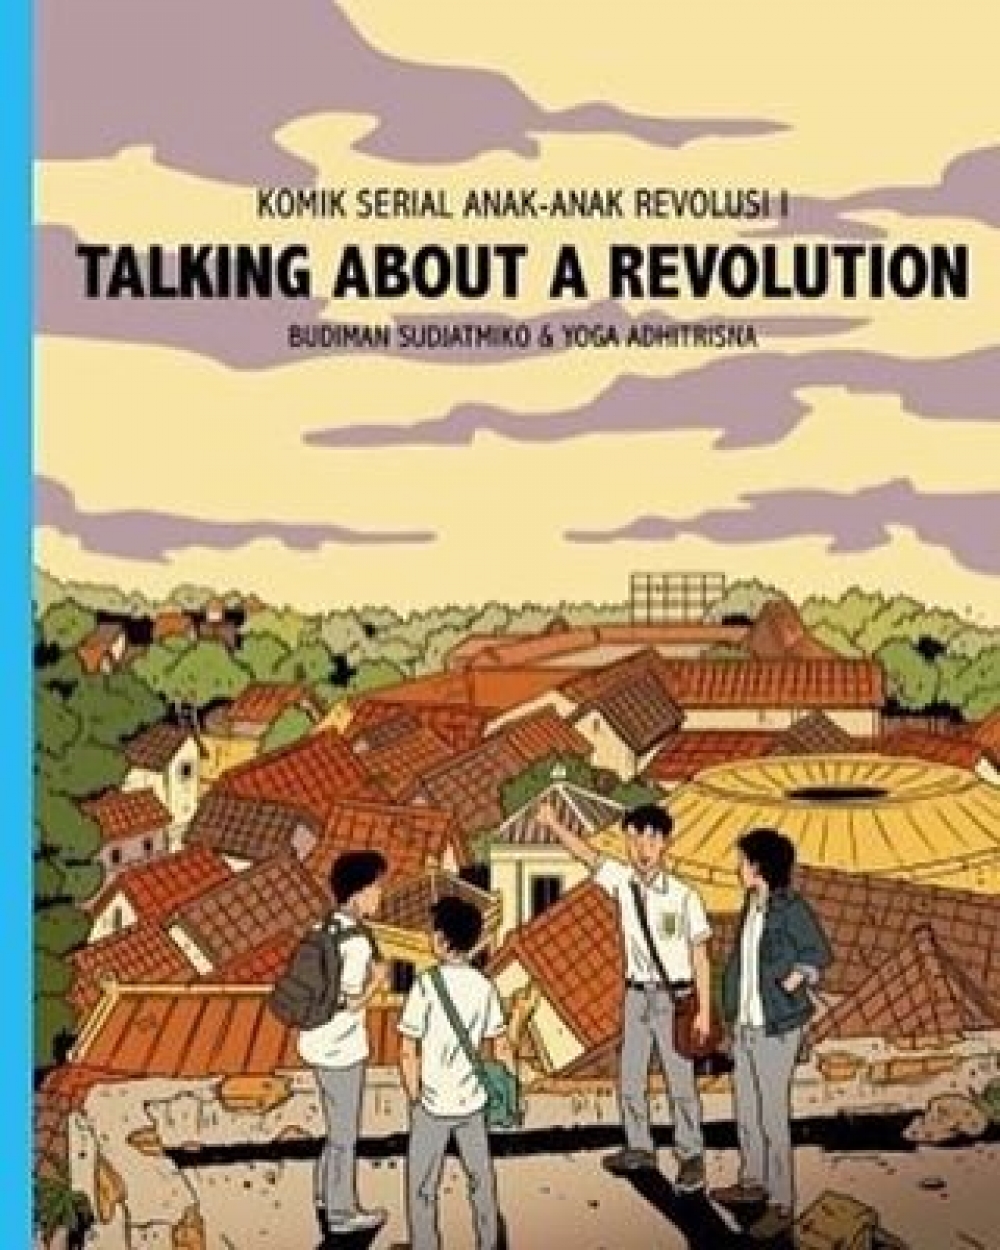 Budiman Sudjatmiko Bagikan Kisah Anak Anak Revolusi Melalui Komik